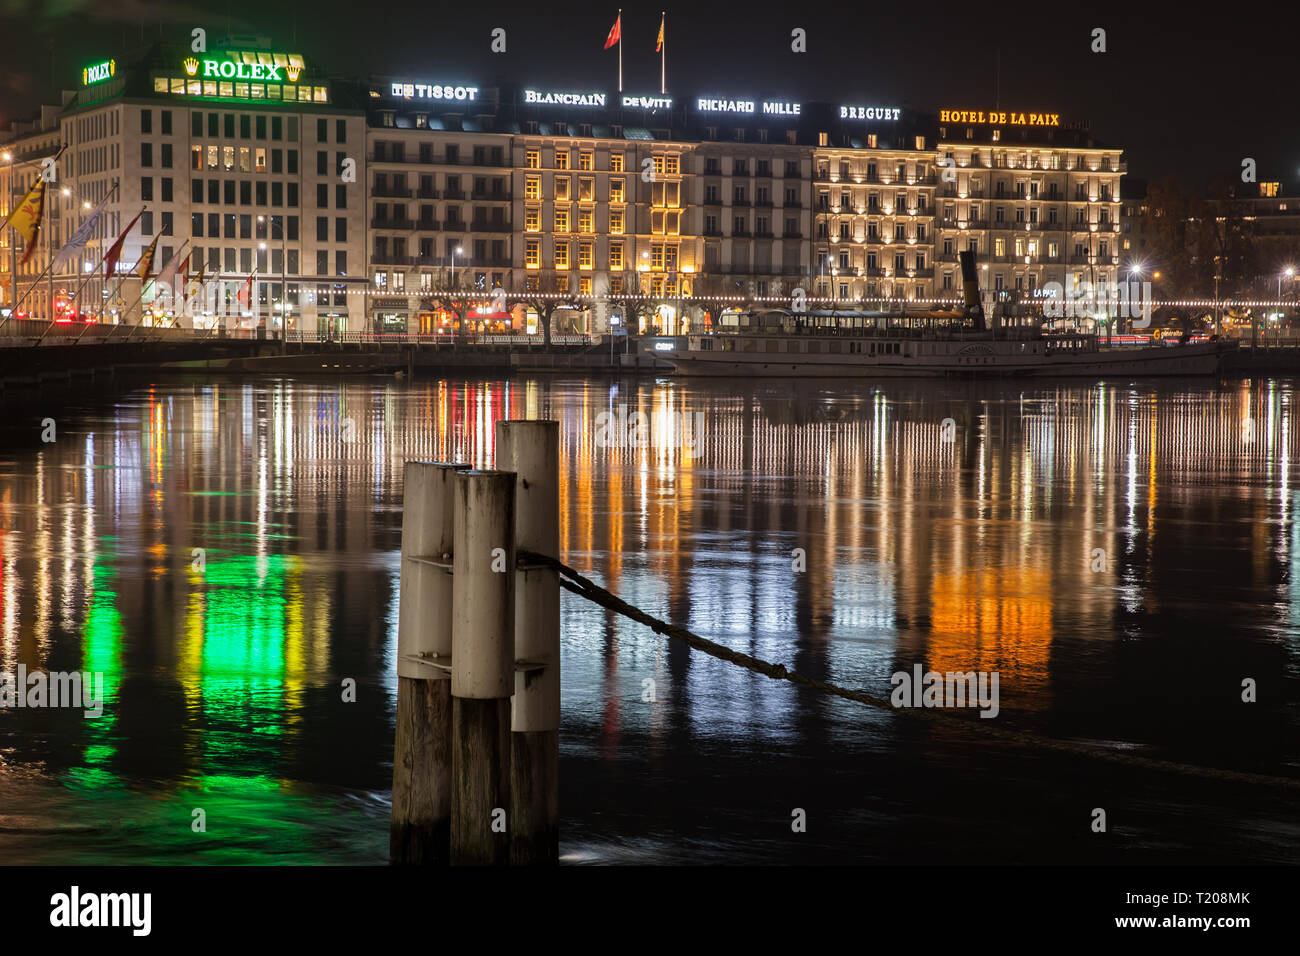 Ginevra, Svizzera - 24 Novembre 2016: notte riverside paesaggio urbano con facciate illuminate nella zona centrale della città di Ginevra Foto Stock